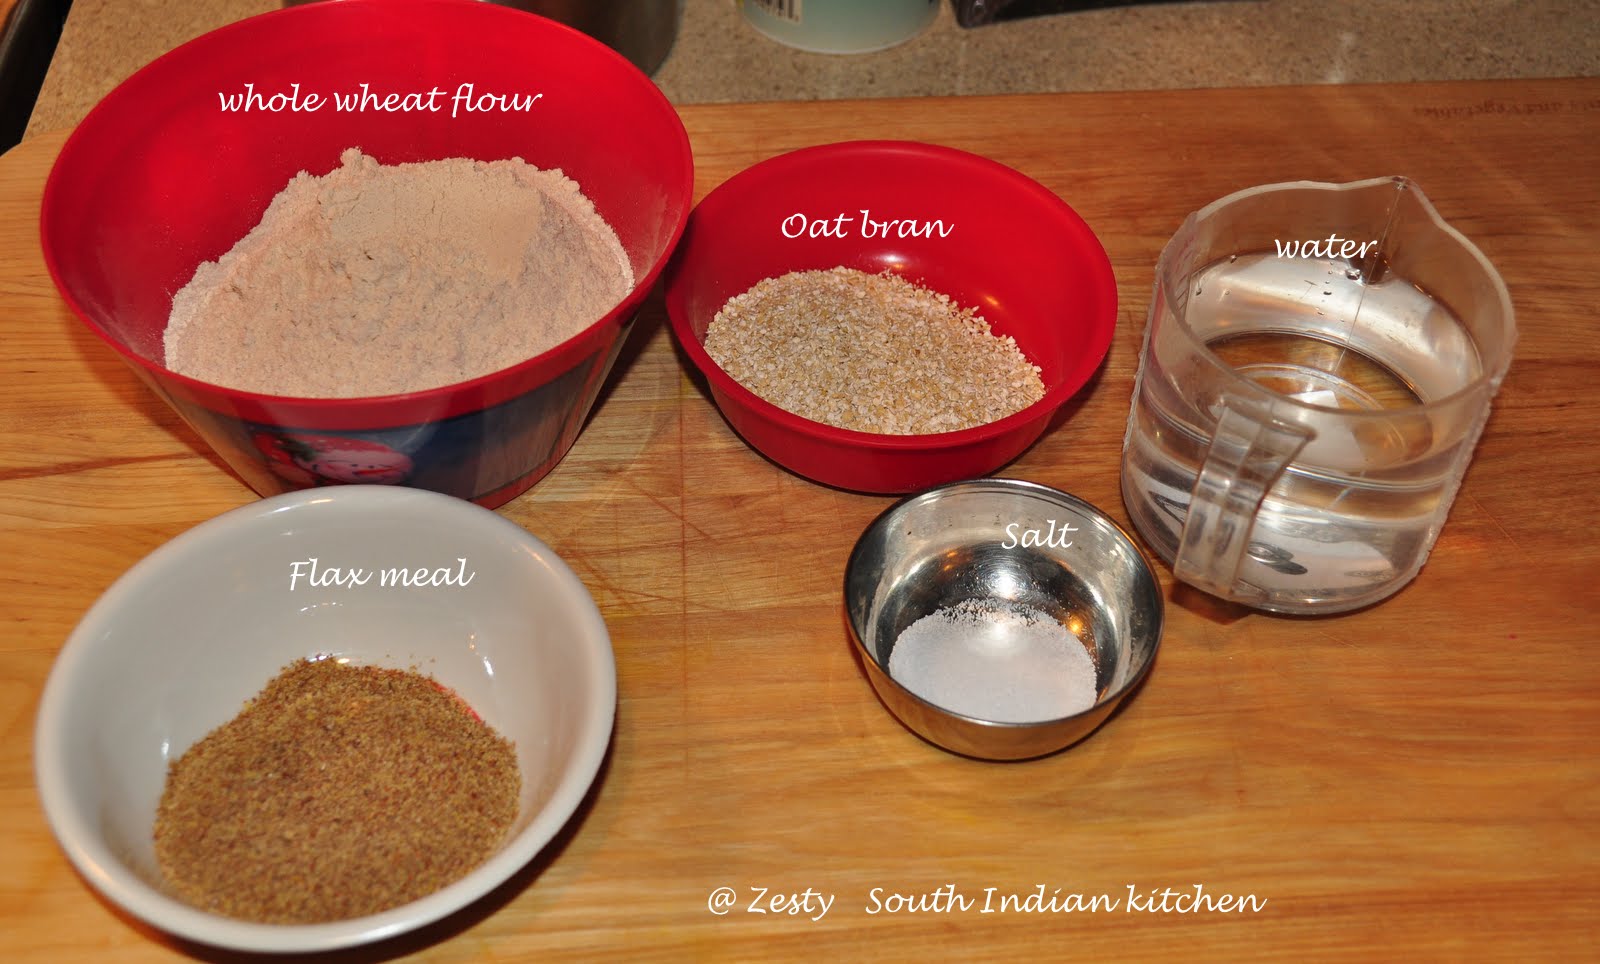 1 tbsp oat bran in grams